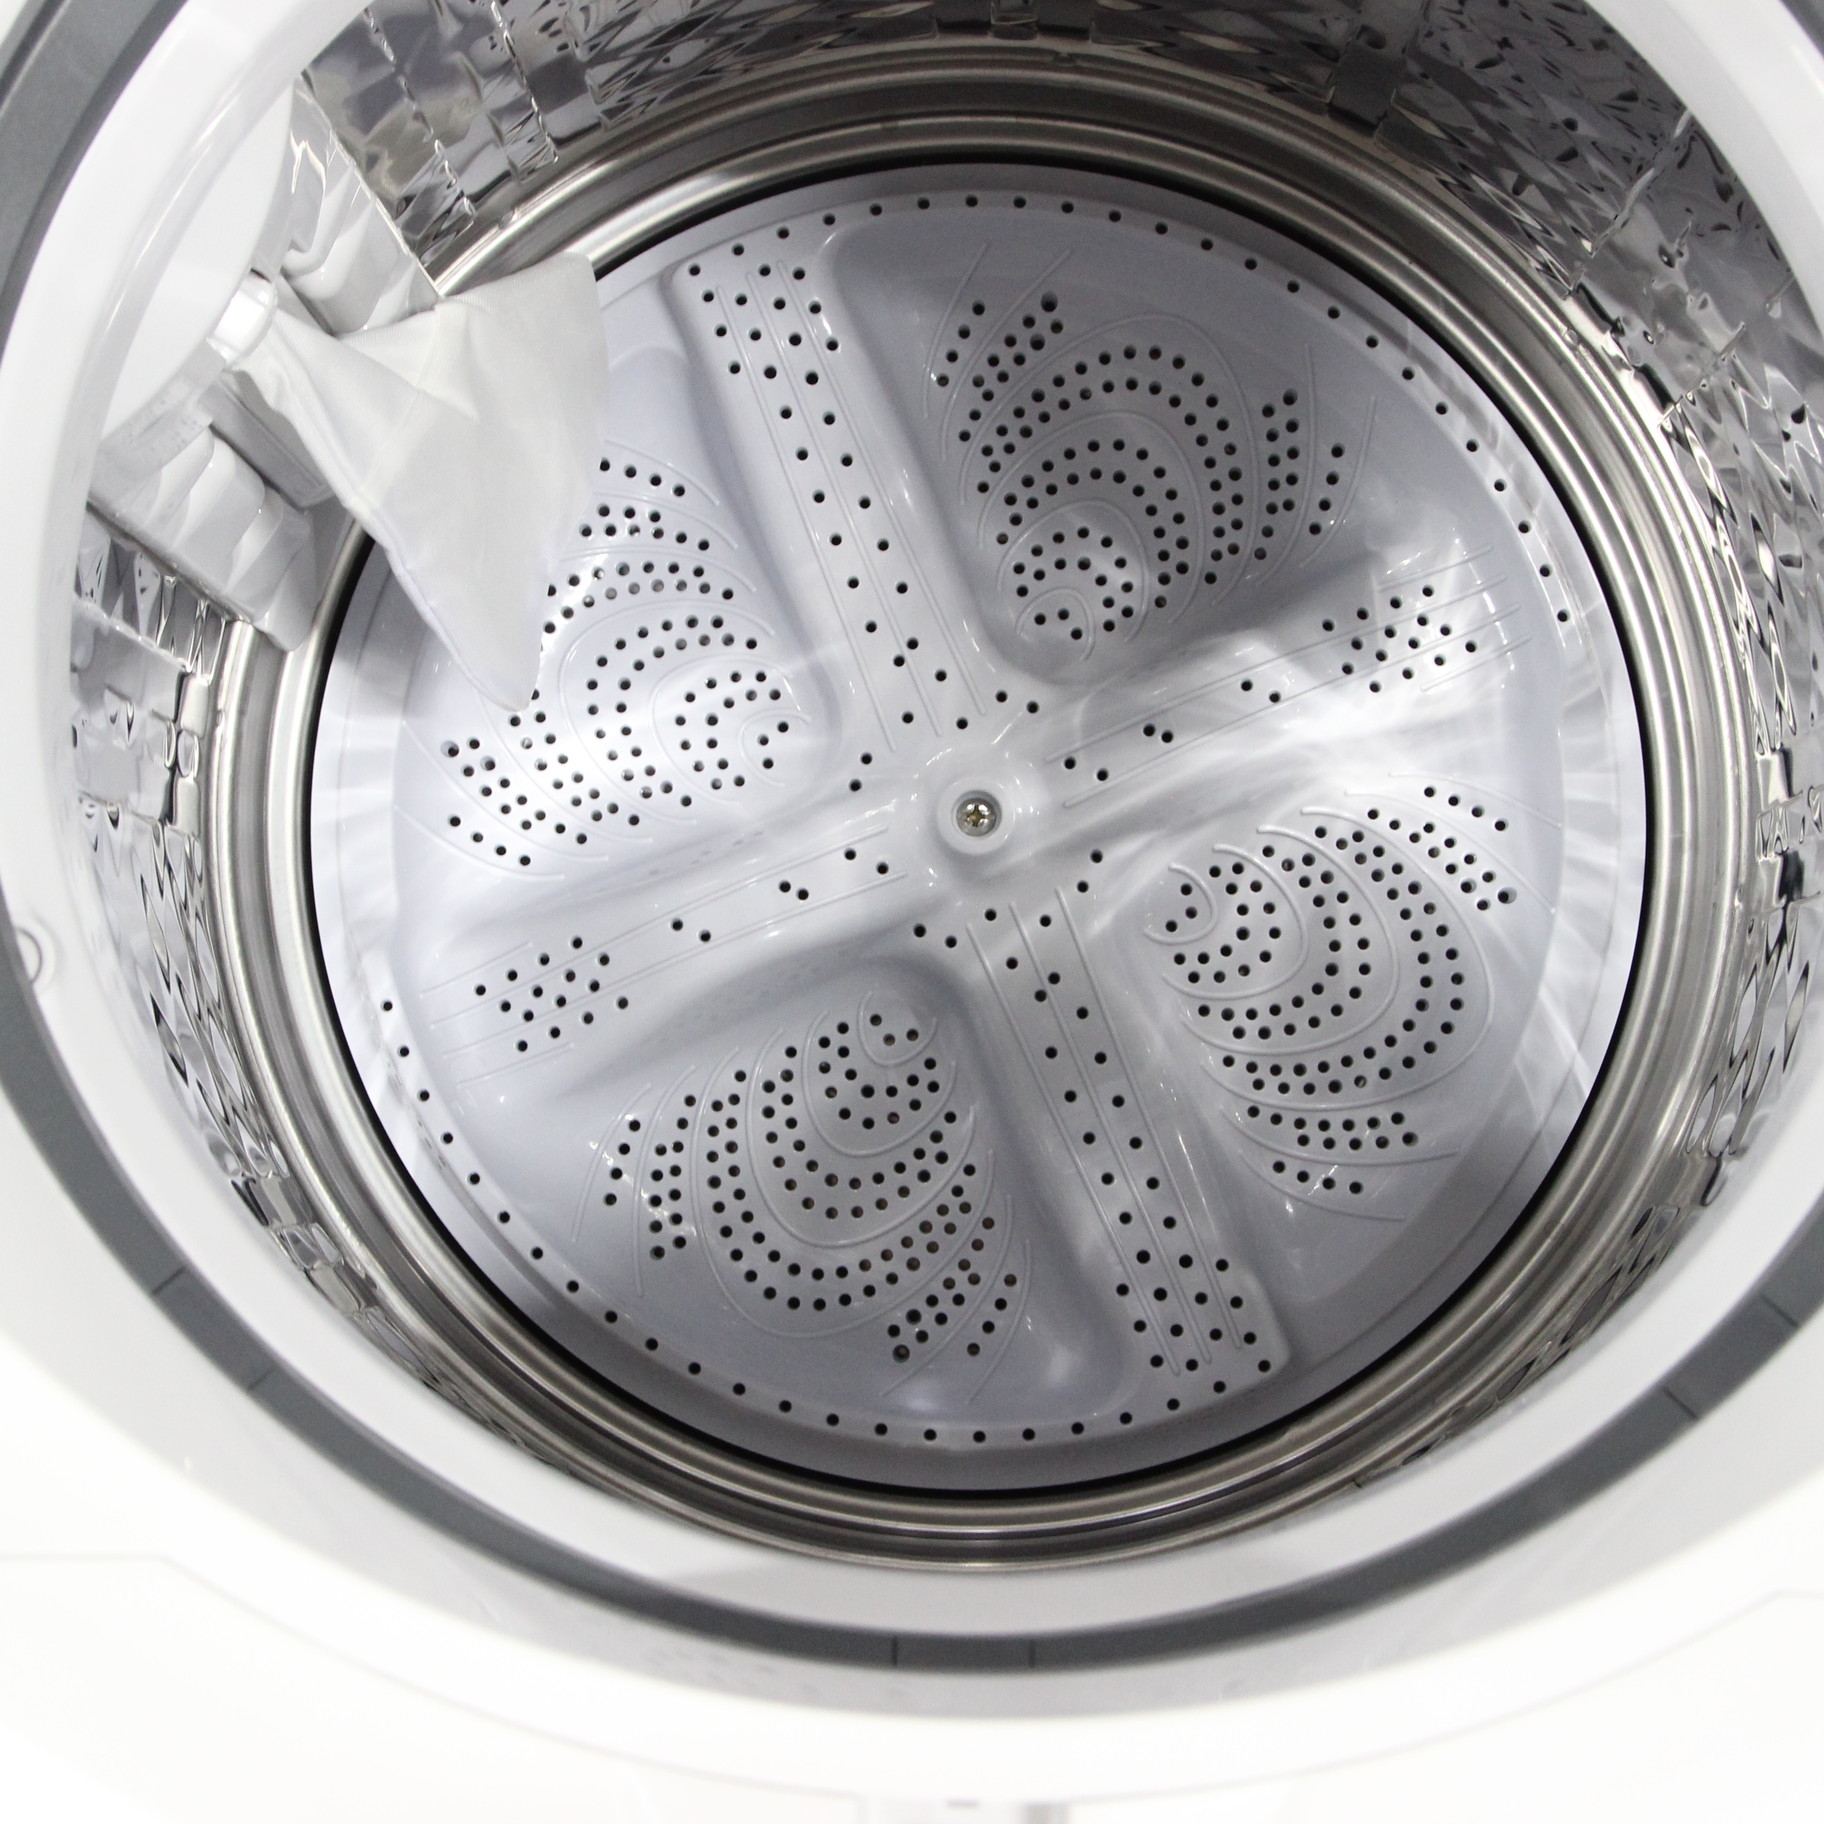 〔展示品〕 ES-TX8H-W 縦型乾燥洗濯機 ホワイト系 [洗濯8.0kg ／乾燥4.5kg ／ヒータ乾燥（排気タイプ）上開き] ES-TX8H-W  ［洗濯8.0kg ／乾燥4.5kg ／ヒーター乾燥(排気タイプ) ／上開き］